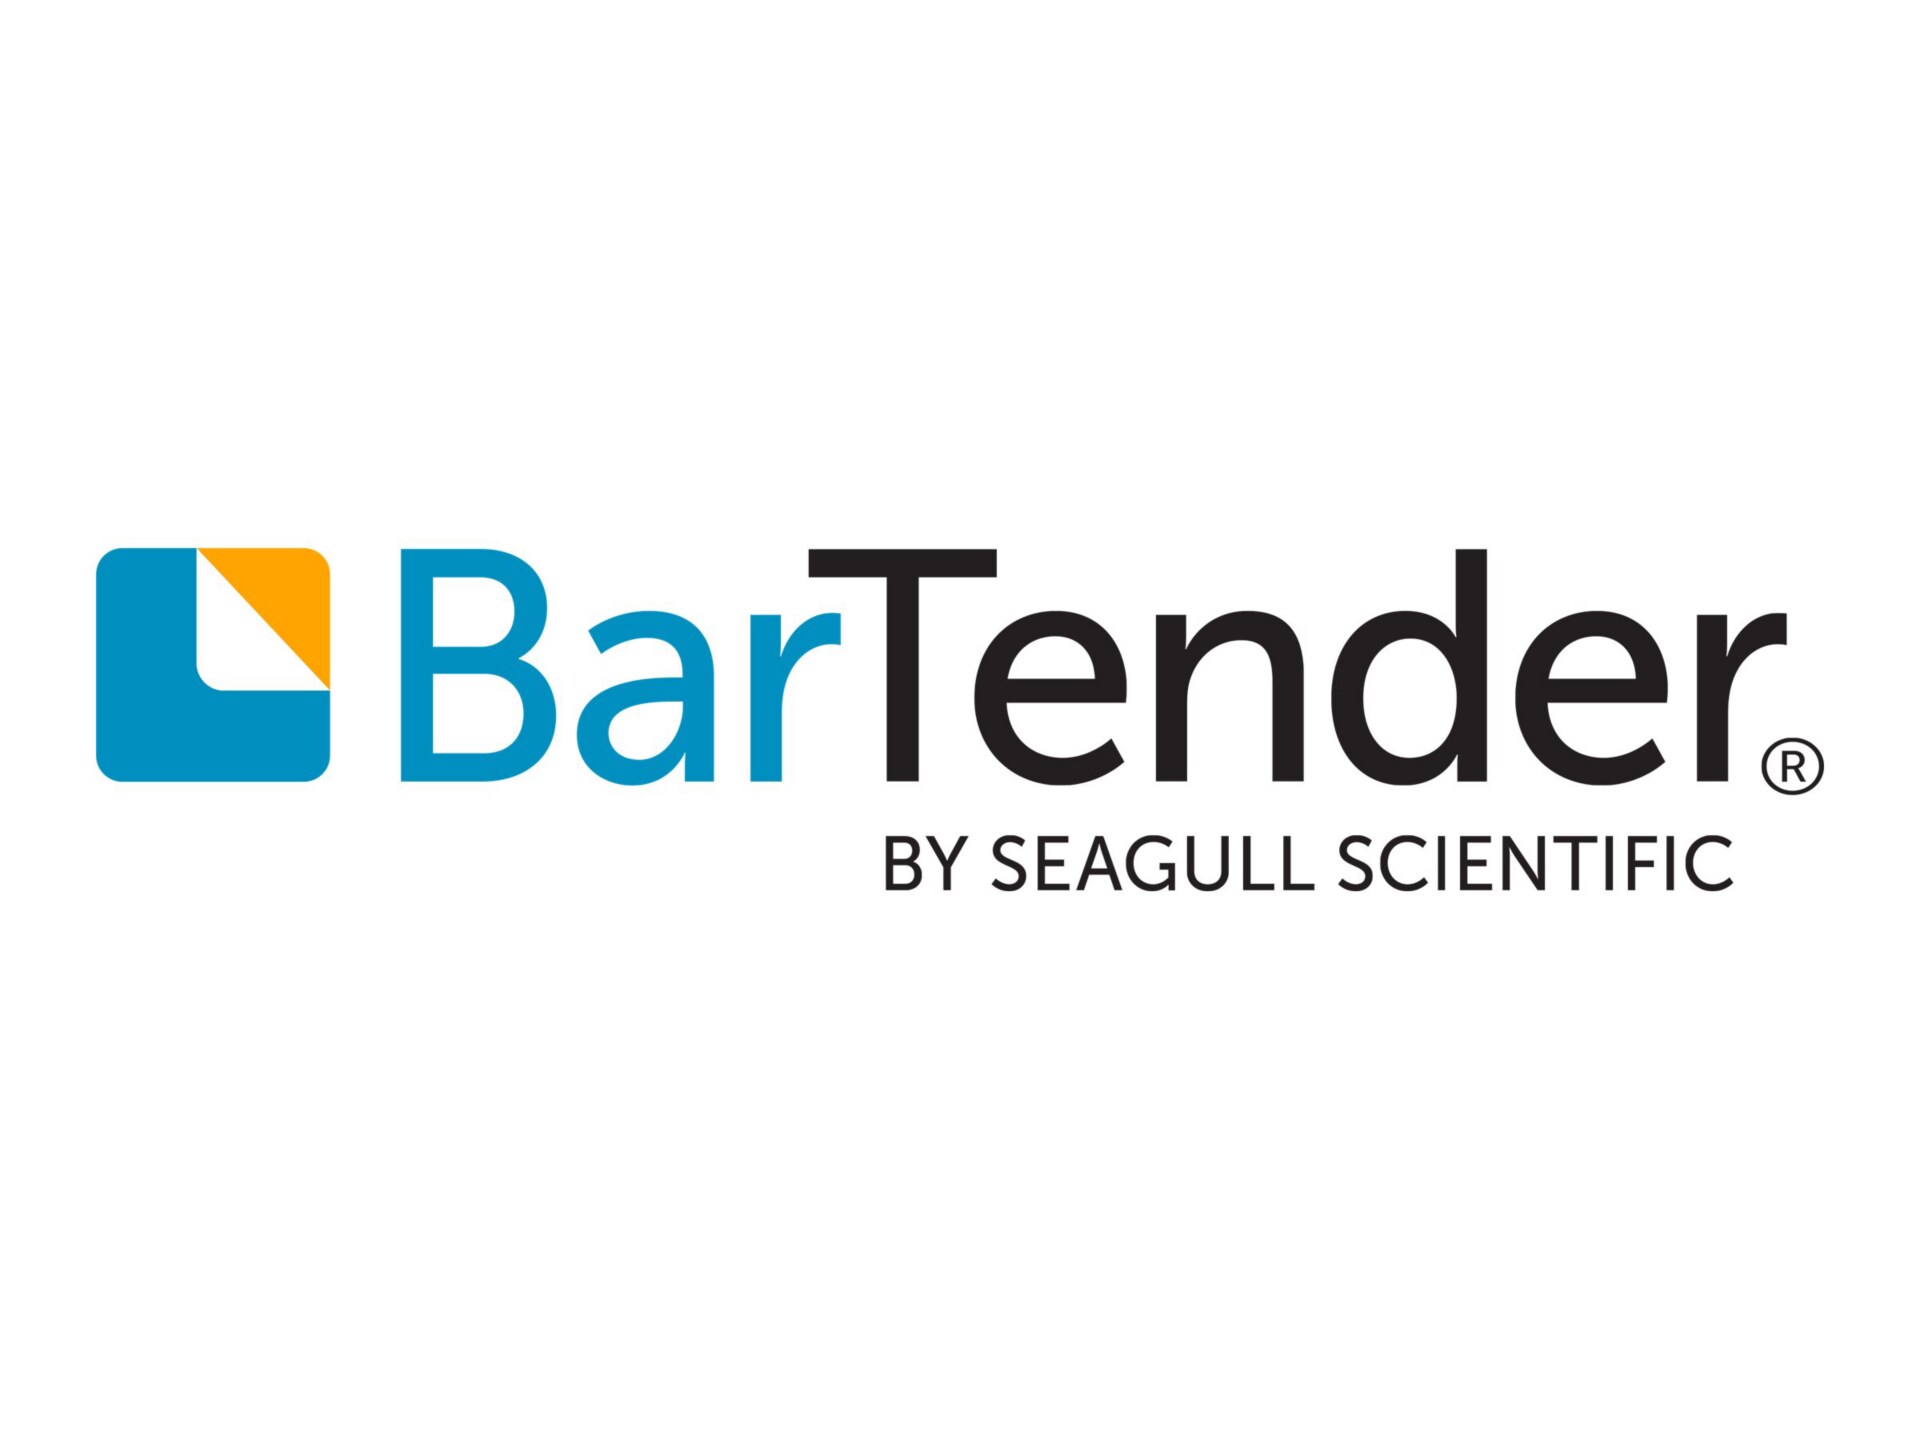 BarTender Enterprise Automation - license